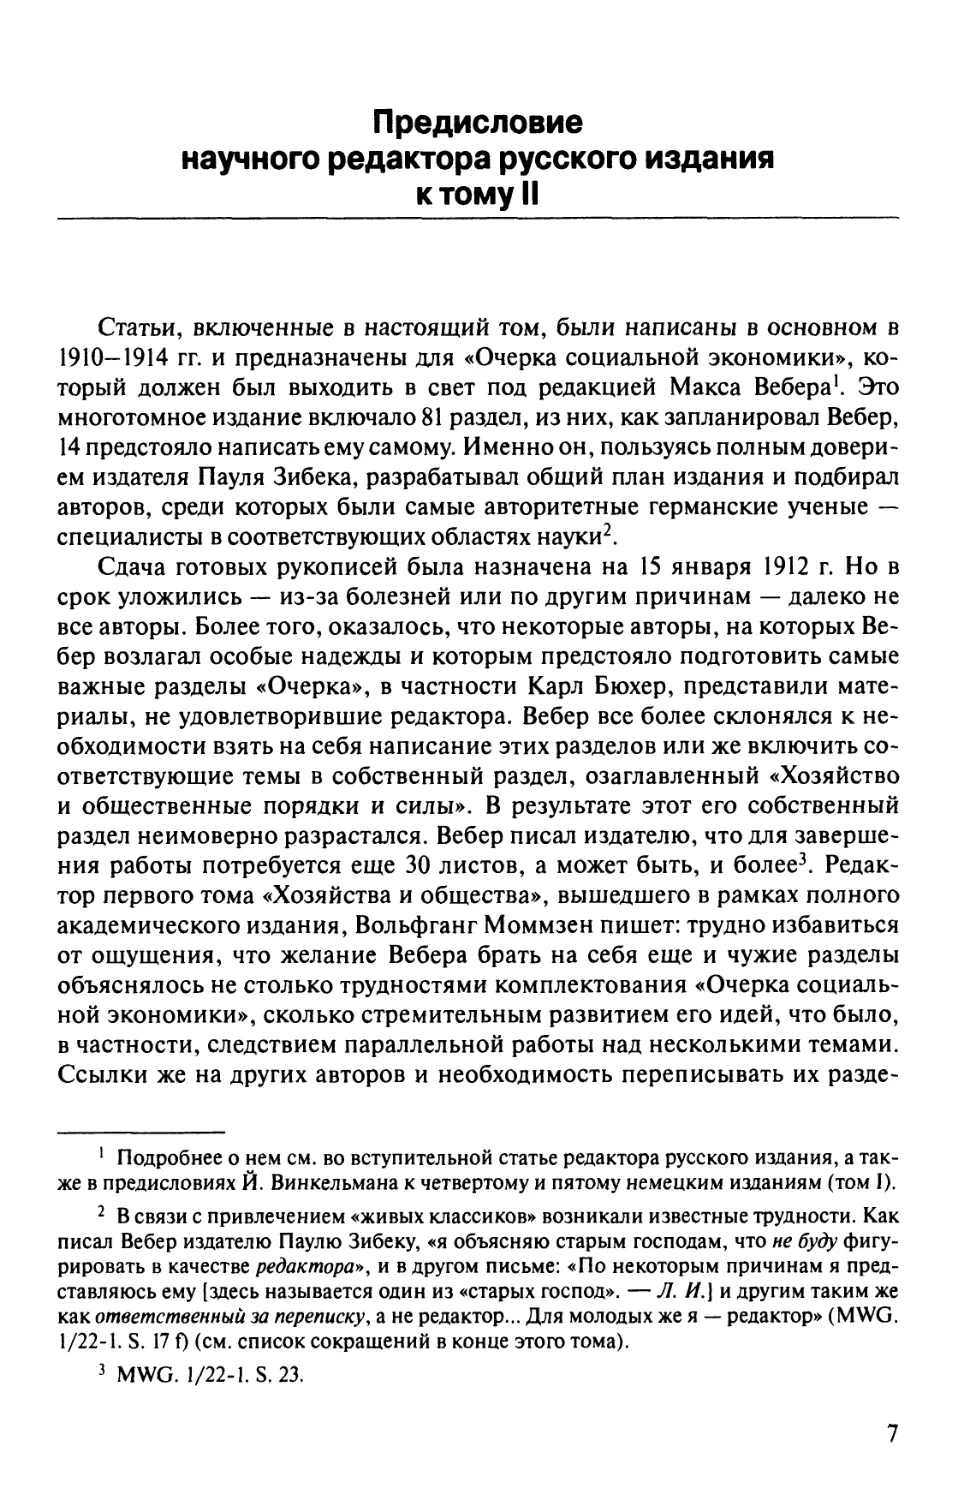 Предисловие научного редактора русского издания к тому II